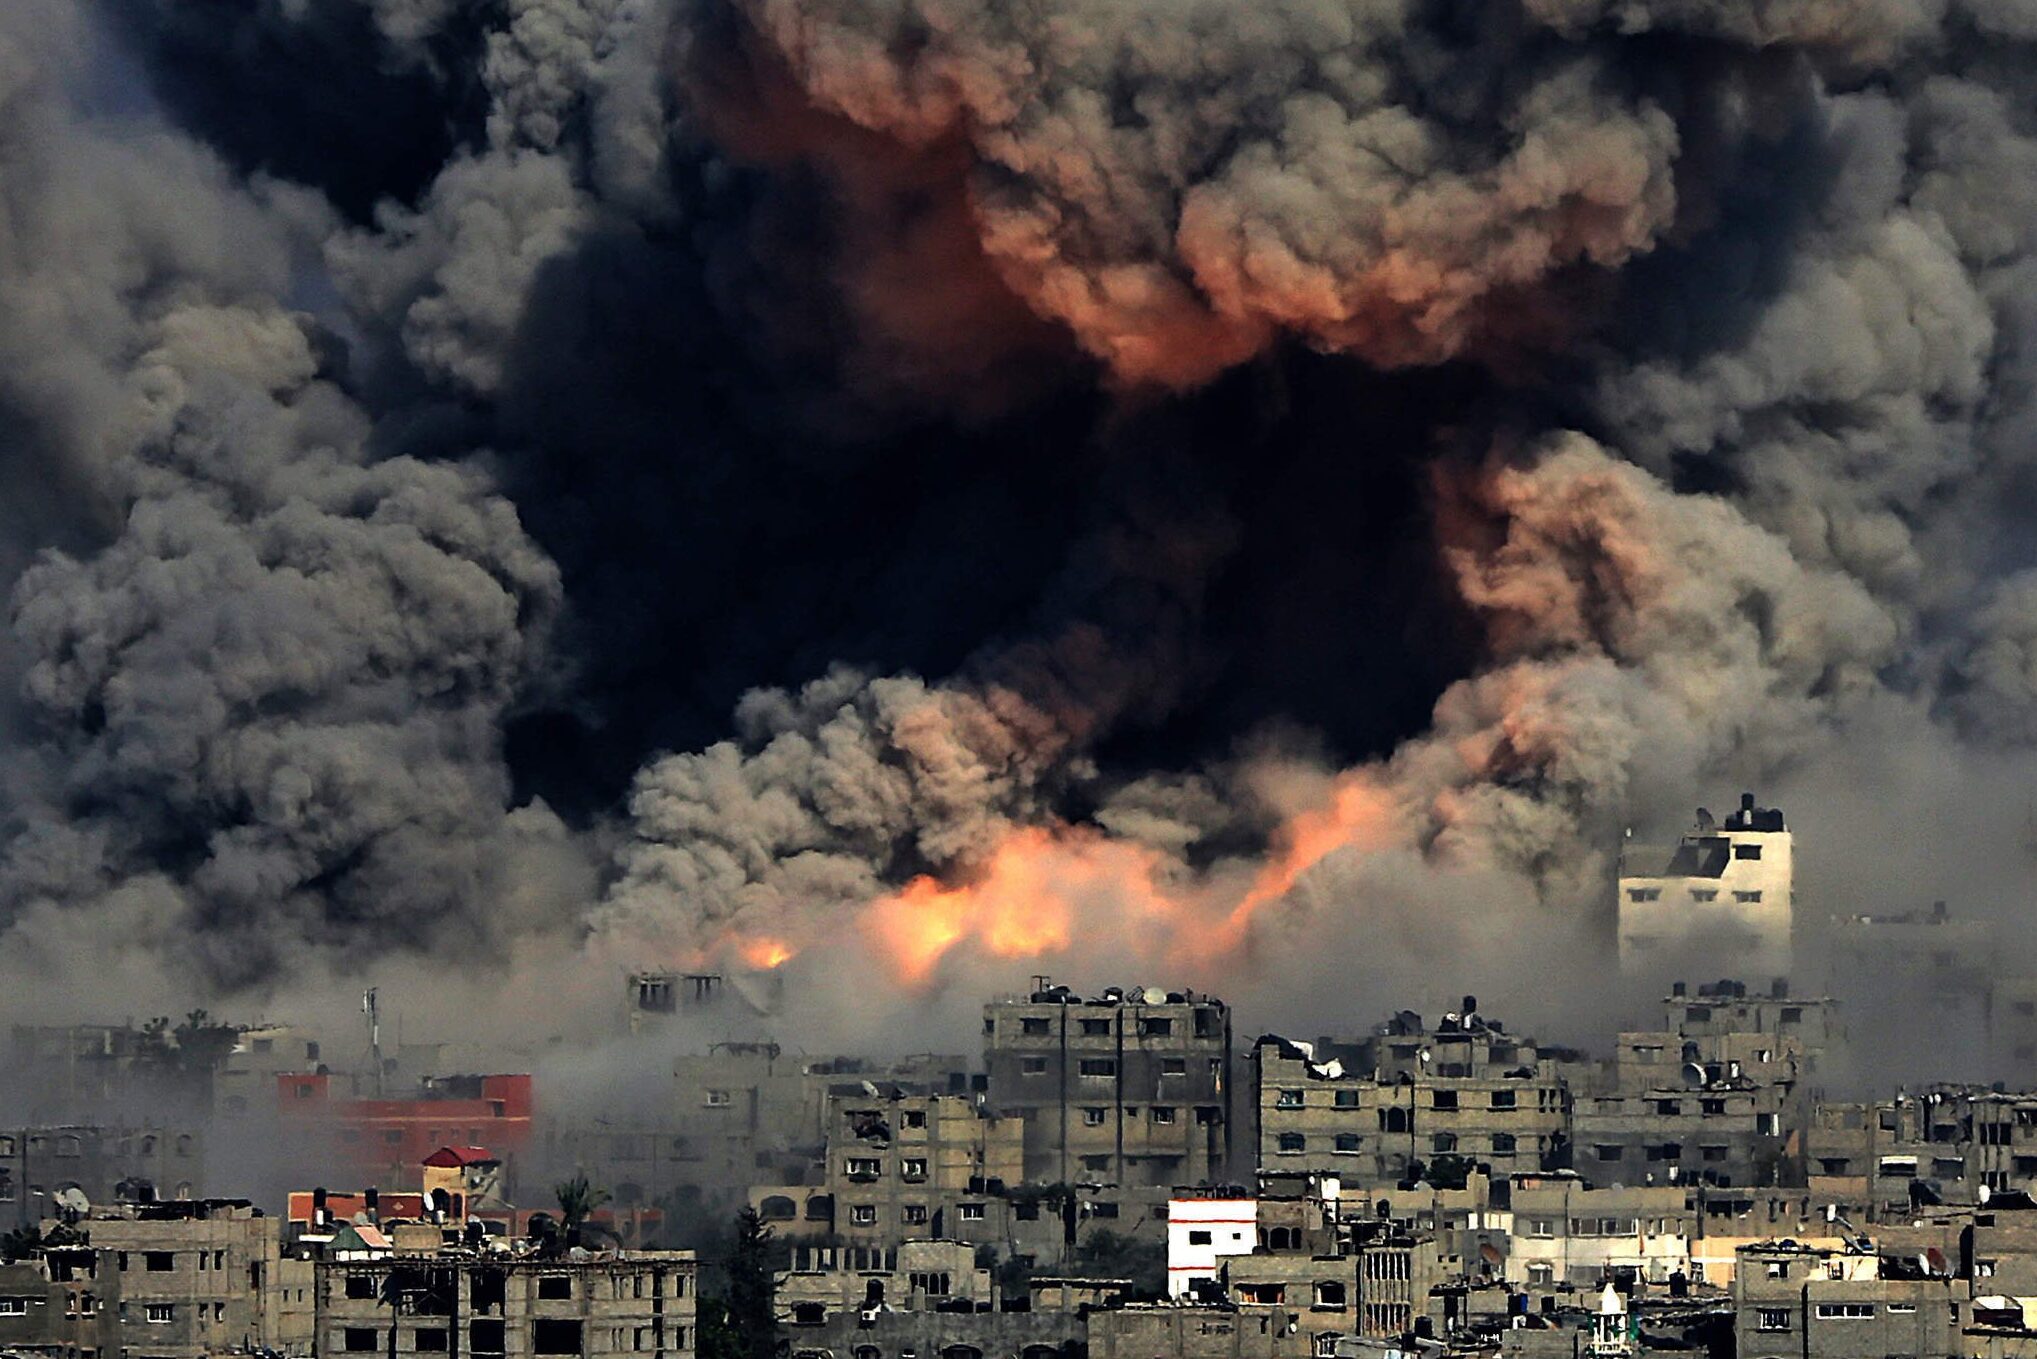 Israeli bomb explodes in Gaza, with smoke engulfing everything